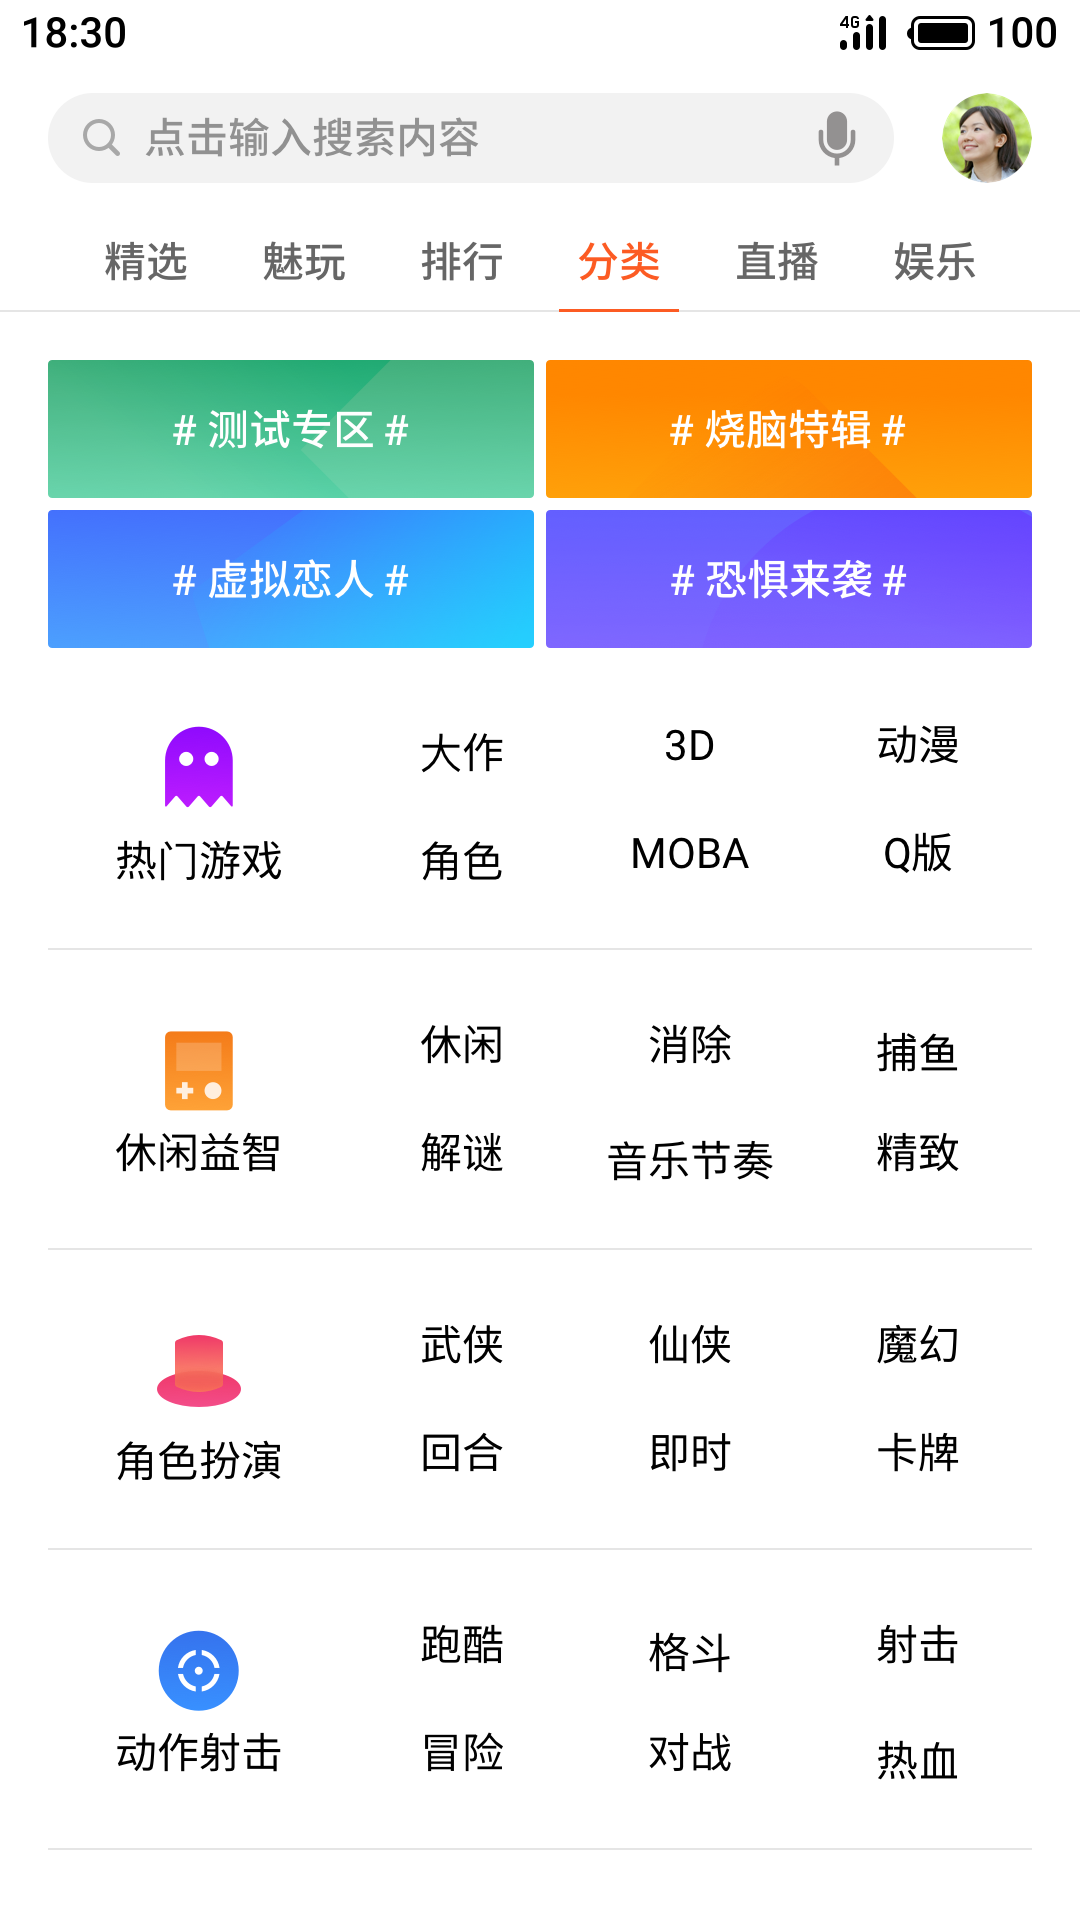 魅族游戏中心app